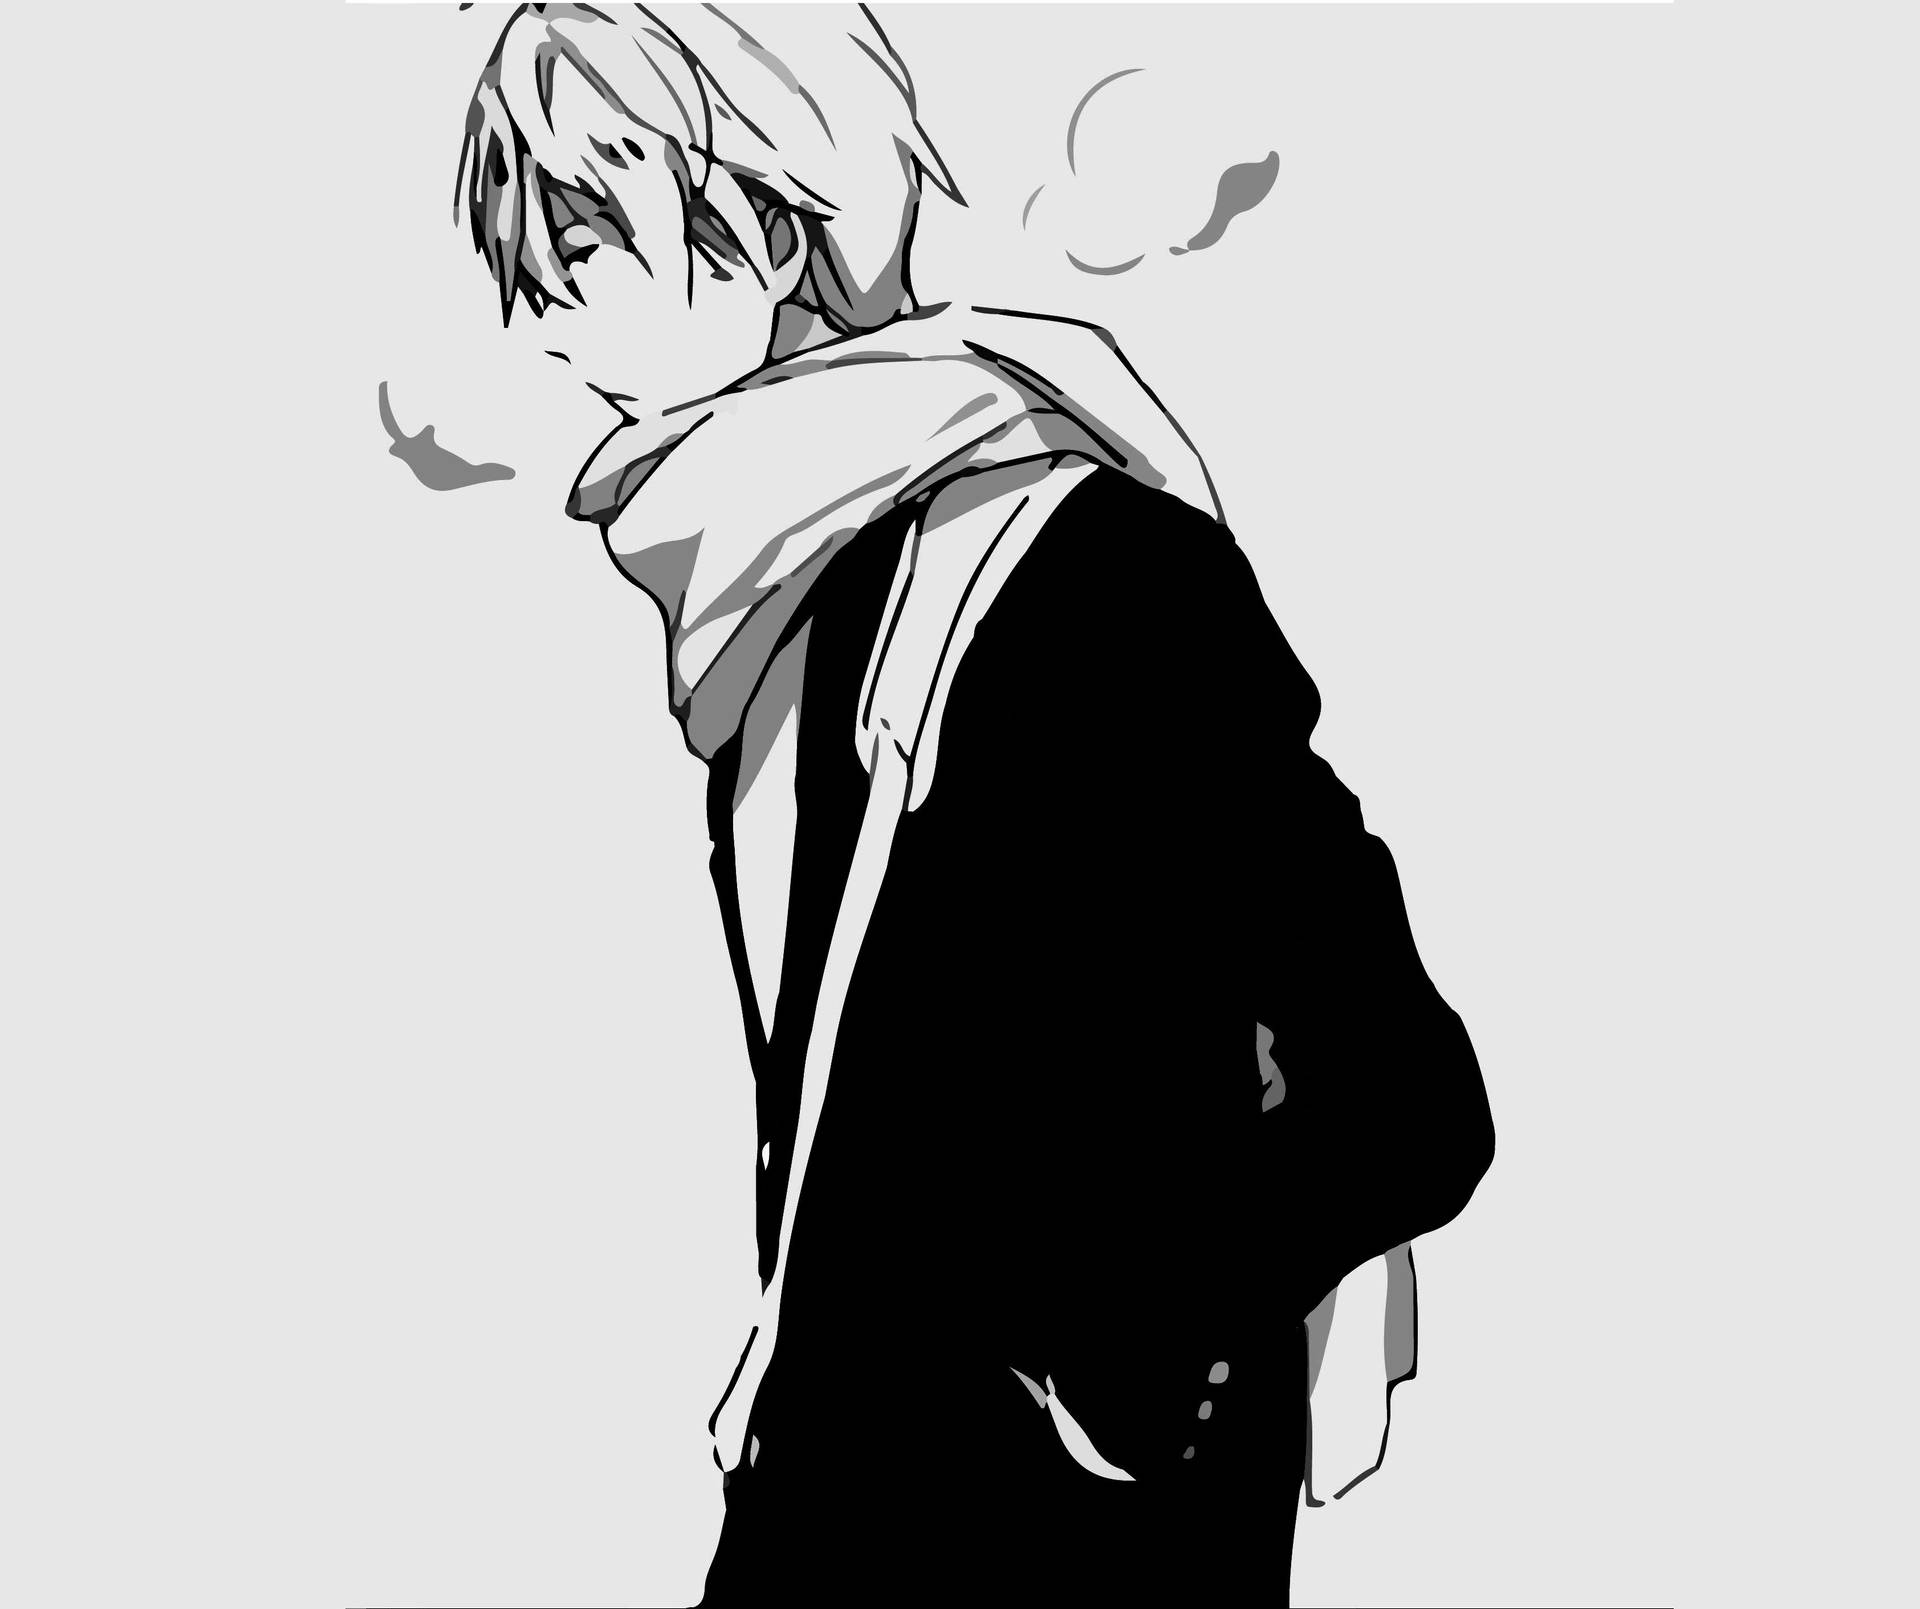 Stylisk sort og hvid anime dreng, står højt med selvtillid. Wallpaper